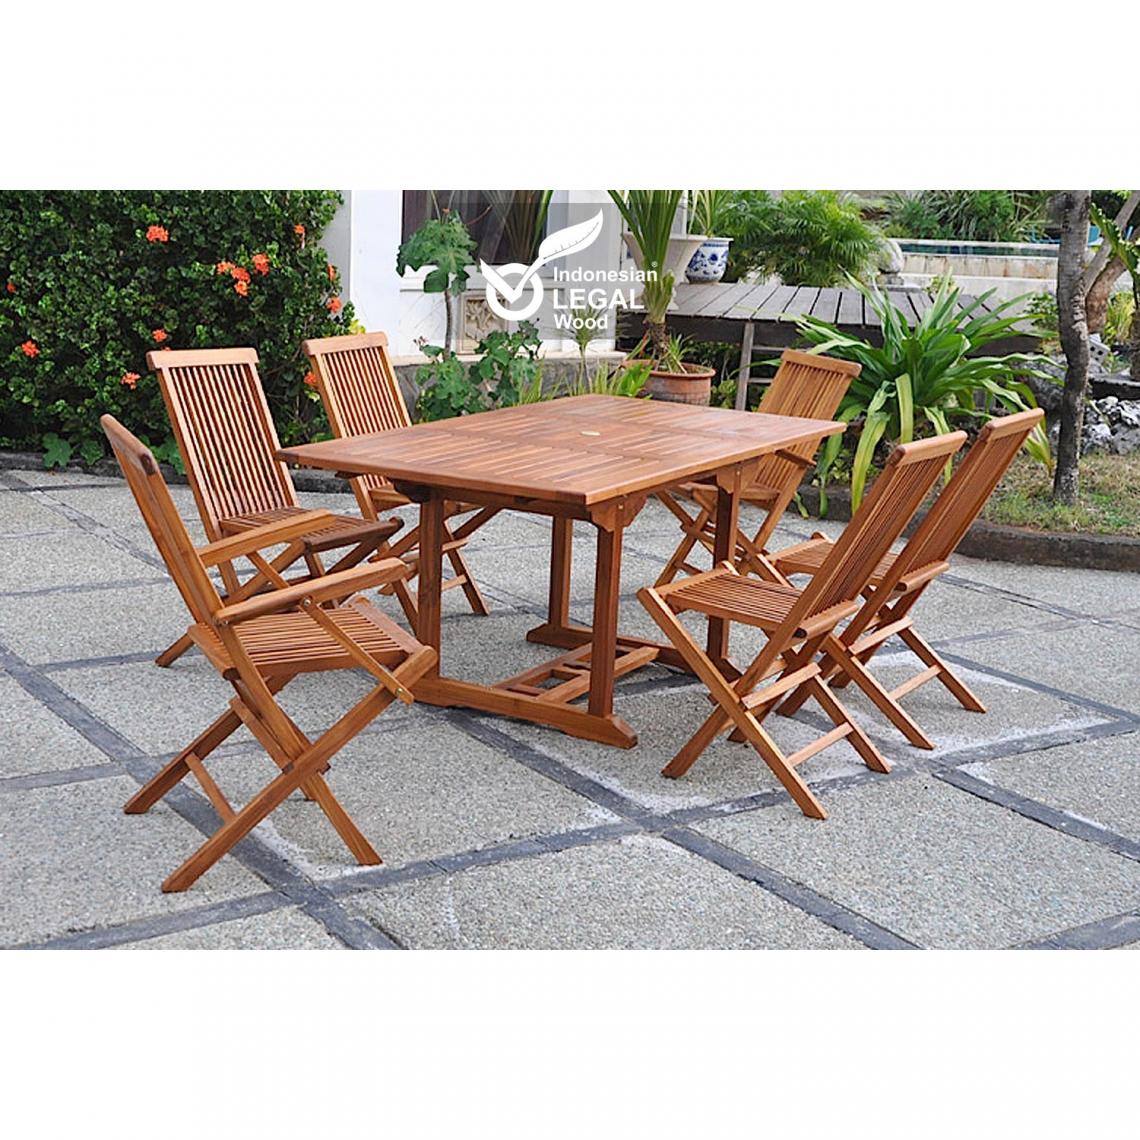 Concept Usine - Lubok : Salon de jardin Teck huilé 6 personnes - Table rectangulaire + 4 chaises + 2 fauteuils - Ensembles tables et chaises